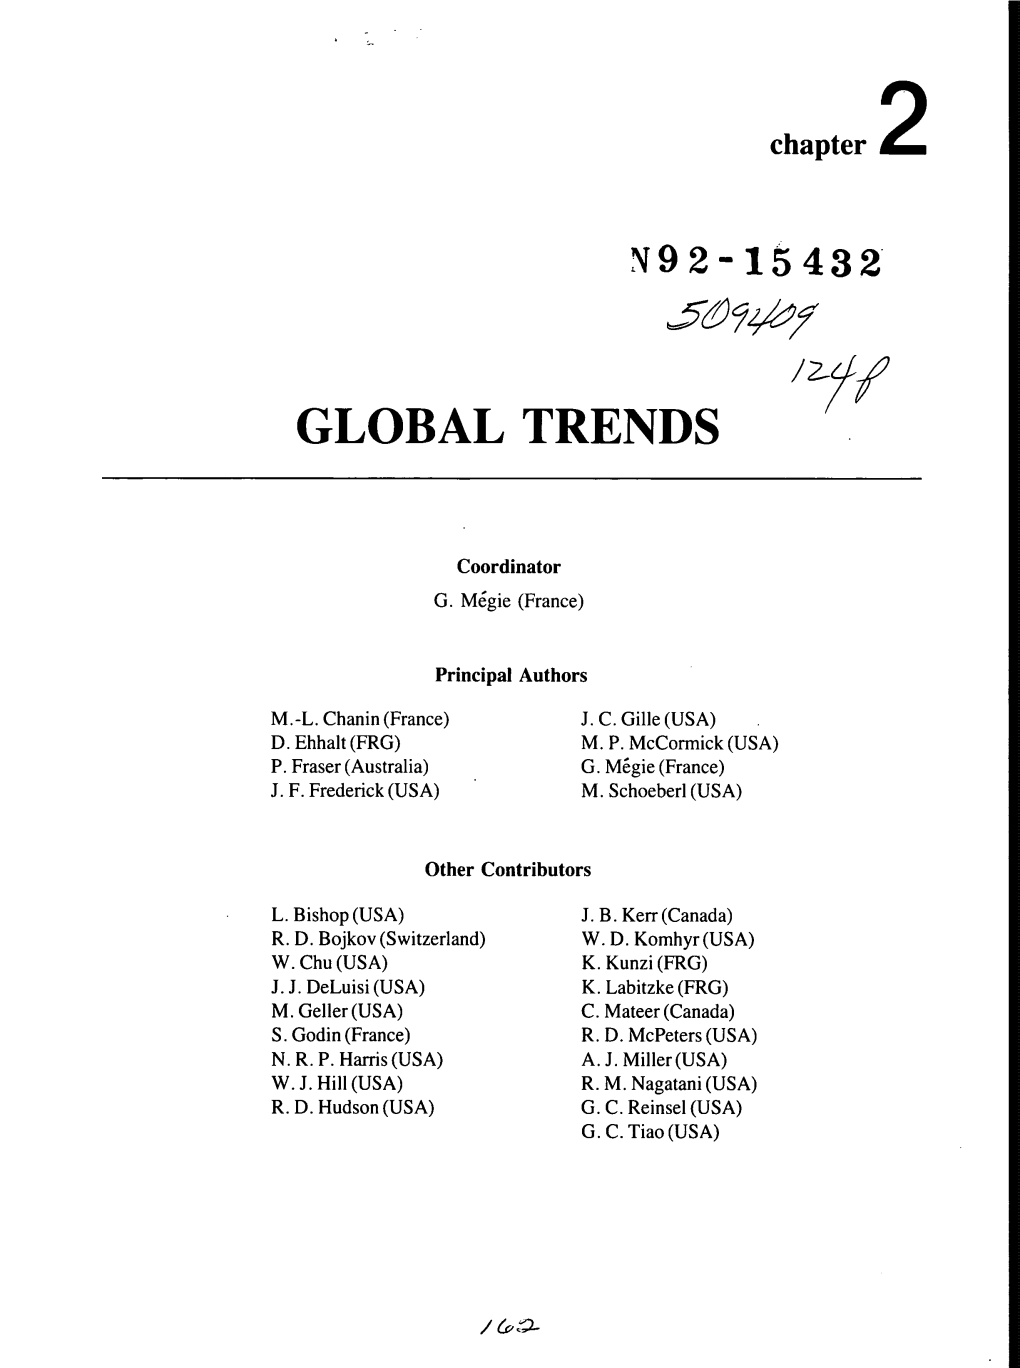 N92-15432 Global Trends